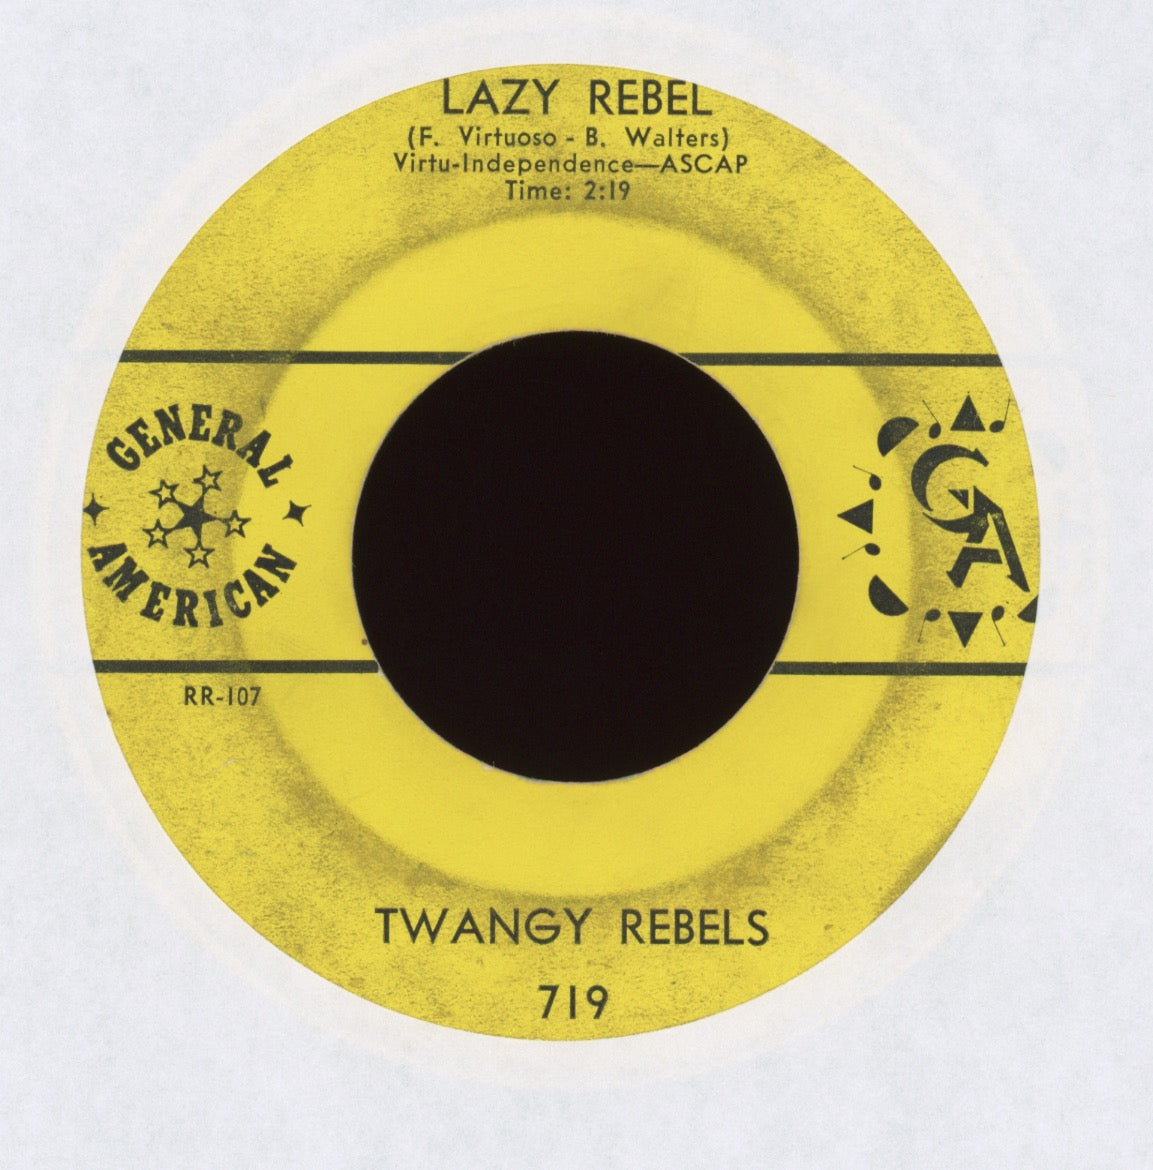 Twangy Rebels - Rebel Rouser "65" on General American